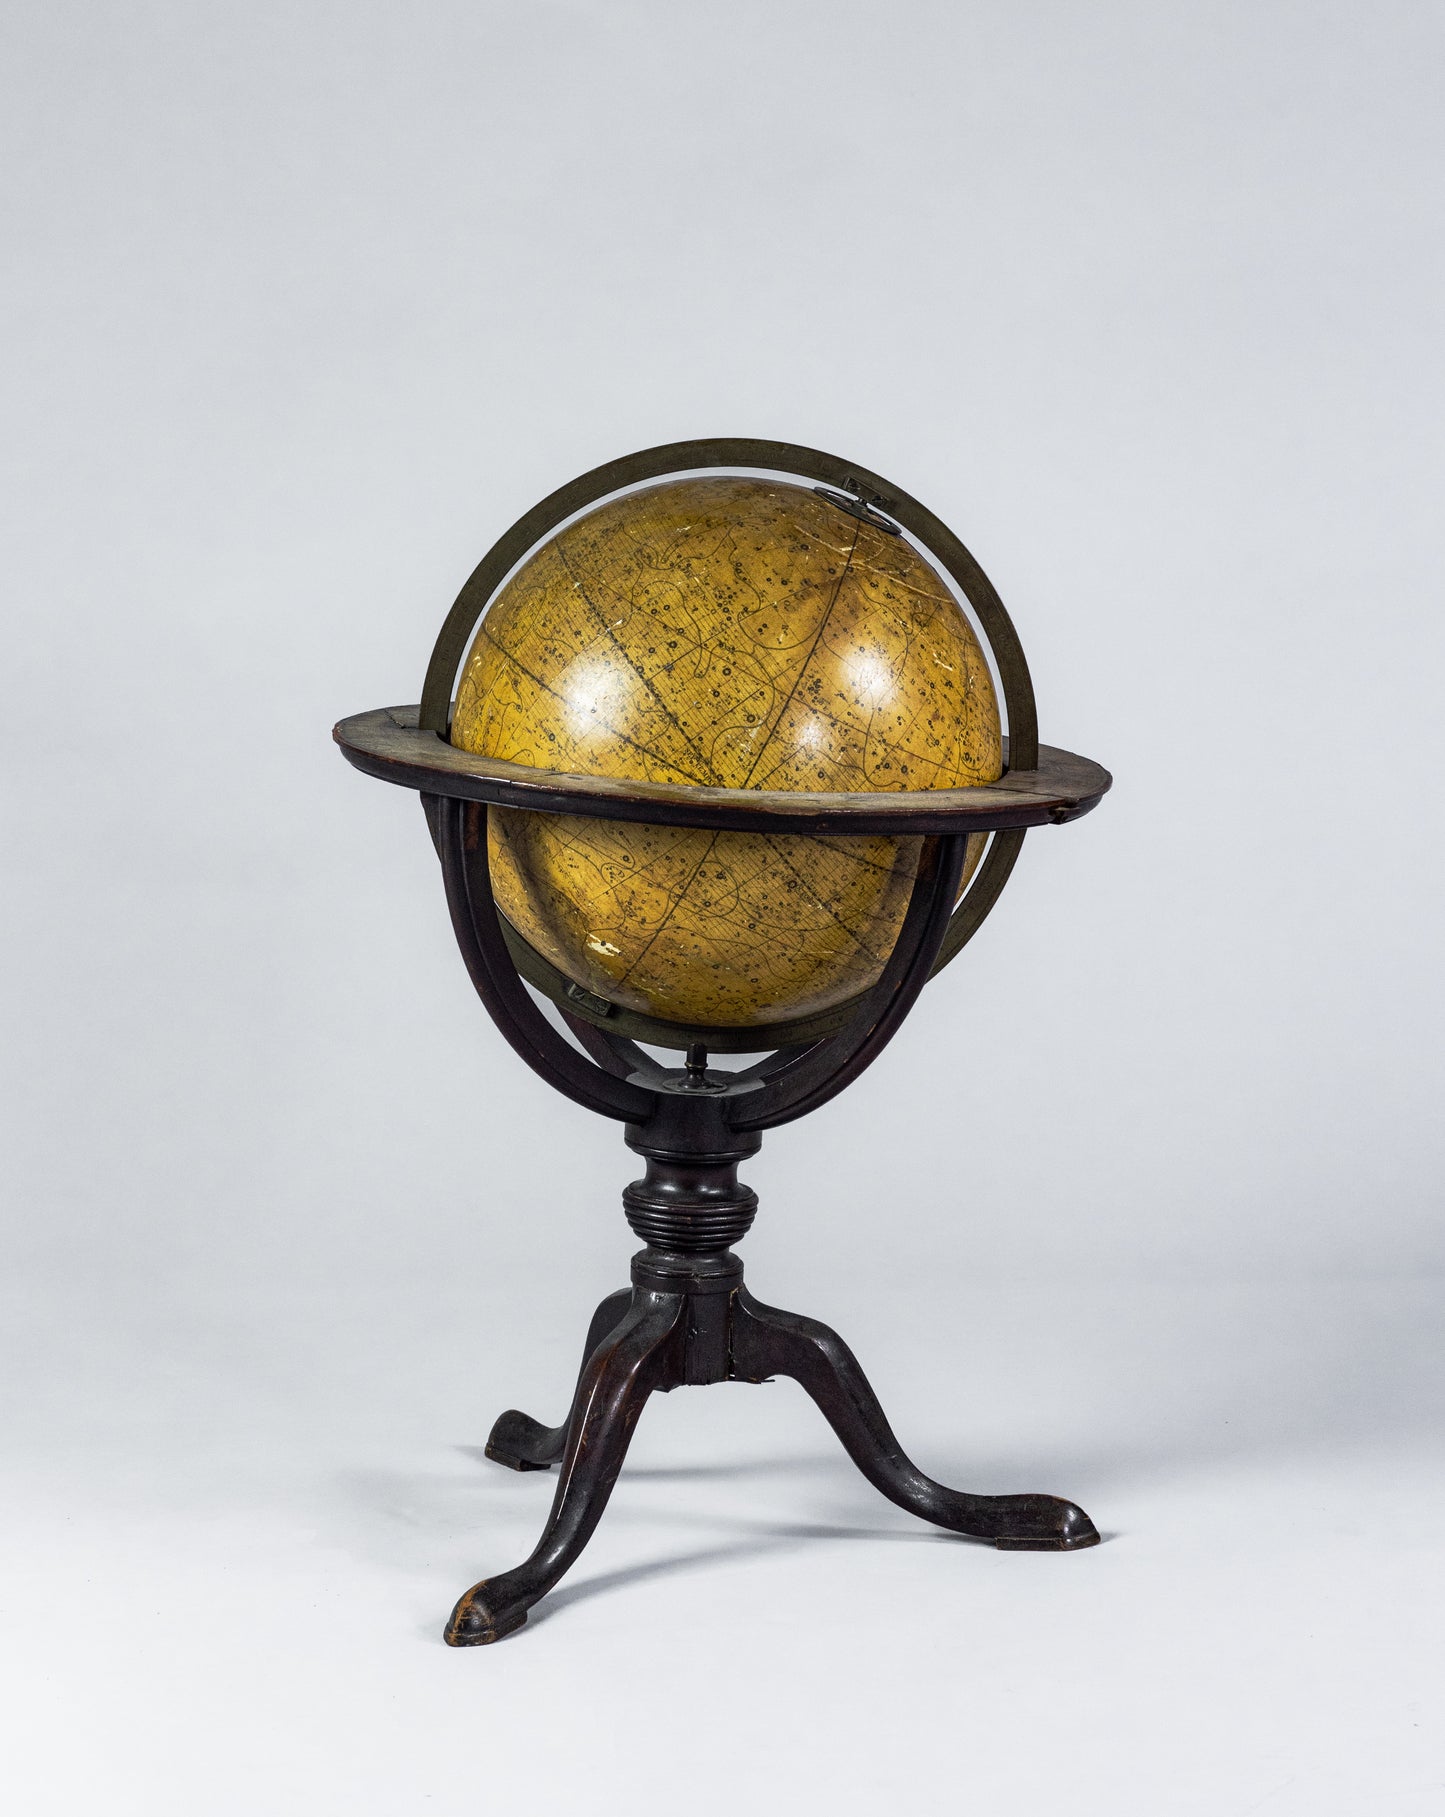 John CARY (1754 – 1835) Cary's New Celestial Globe. London, 1800.